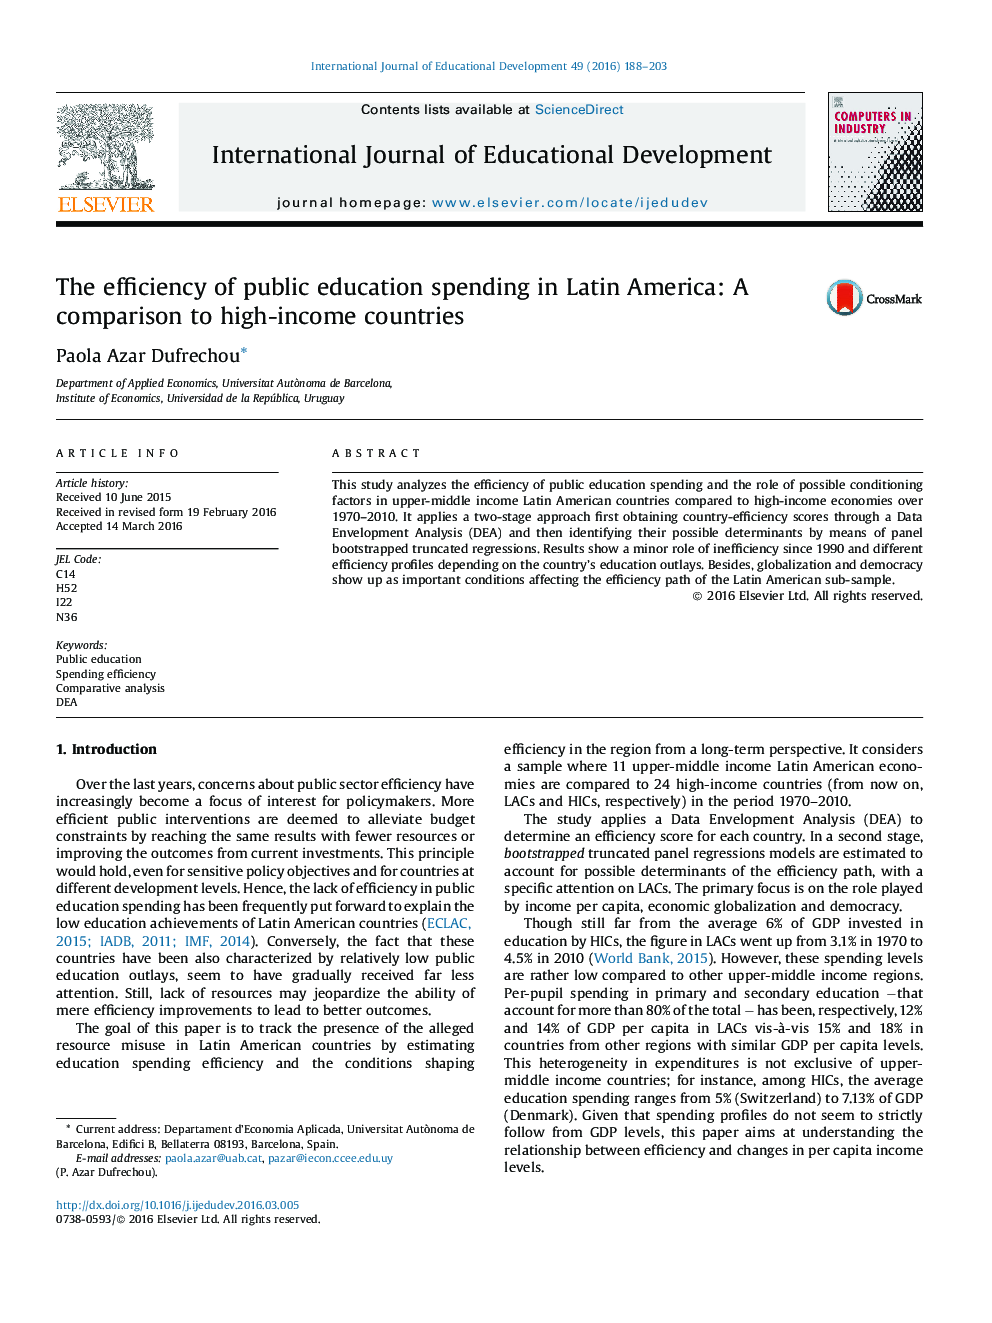 بازده هزینه های آموزش عمومی در آمریکای لاتین: مقایسه با کشورهای با درآمد بالا 